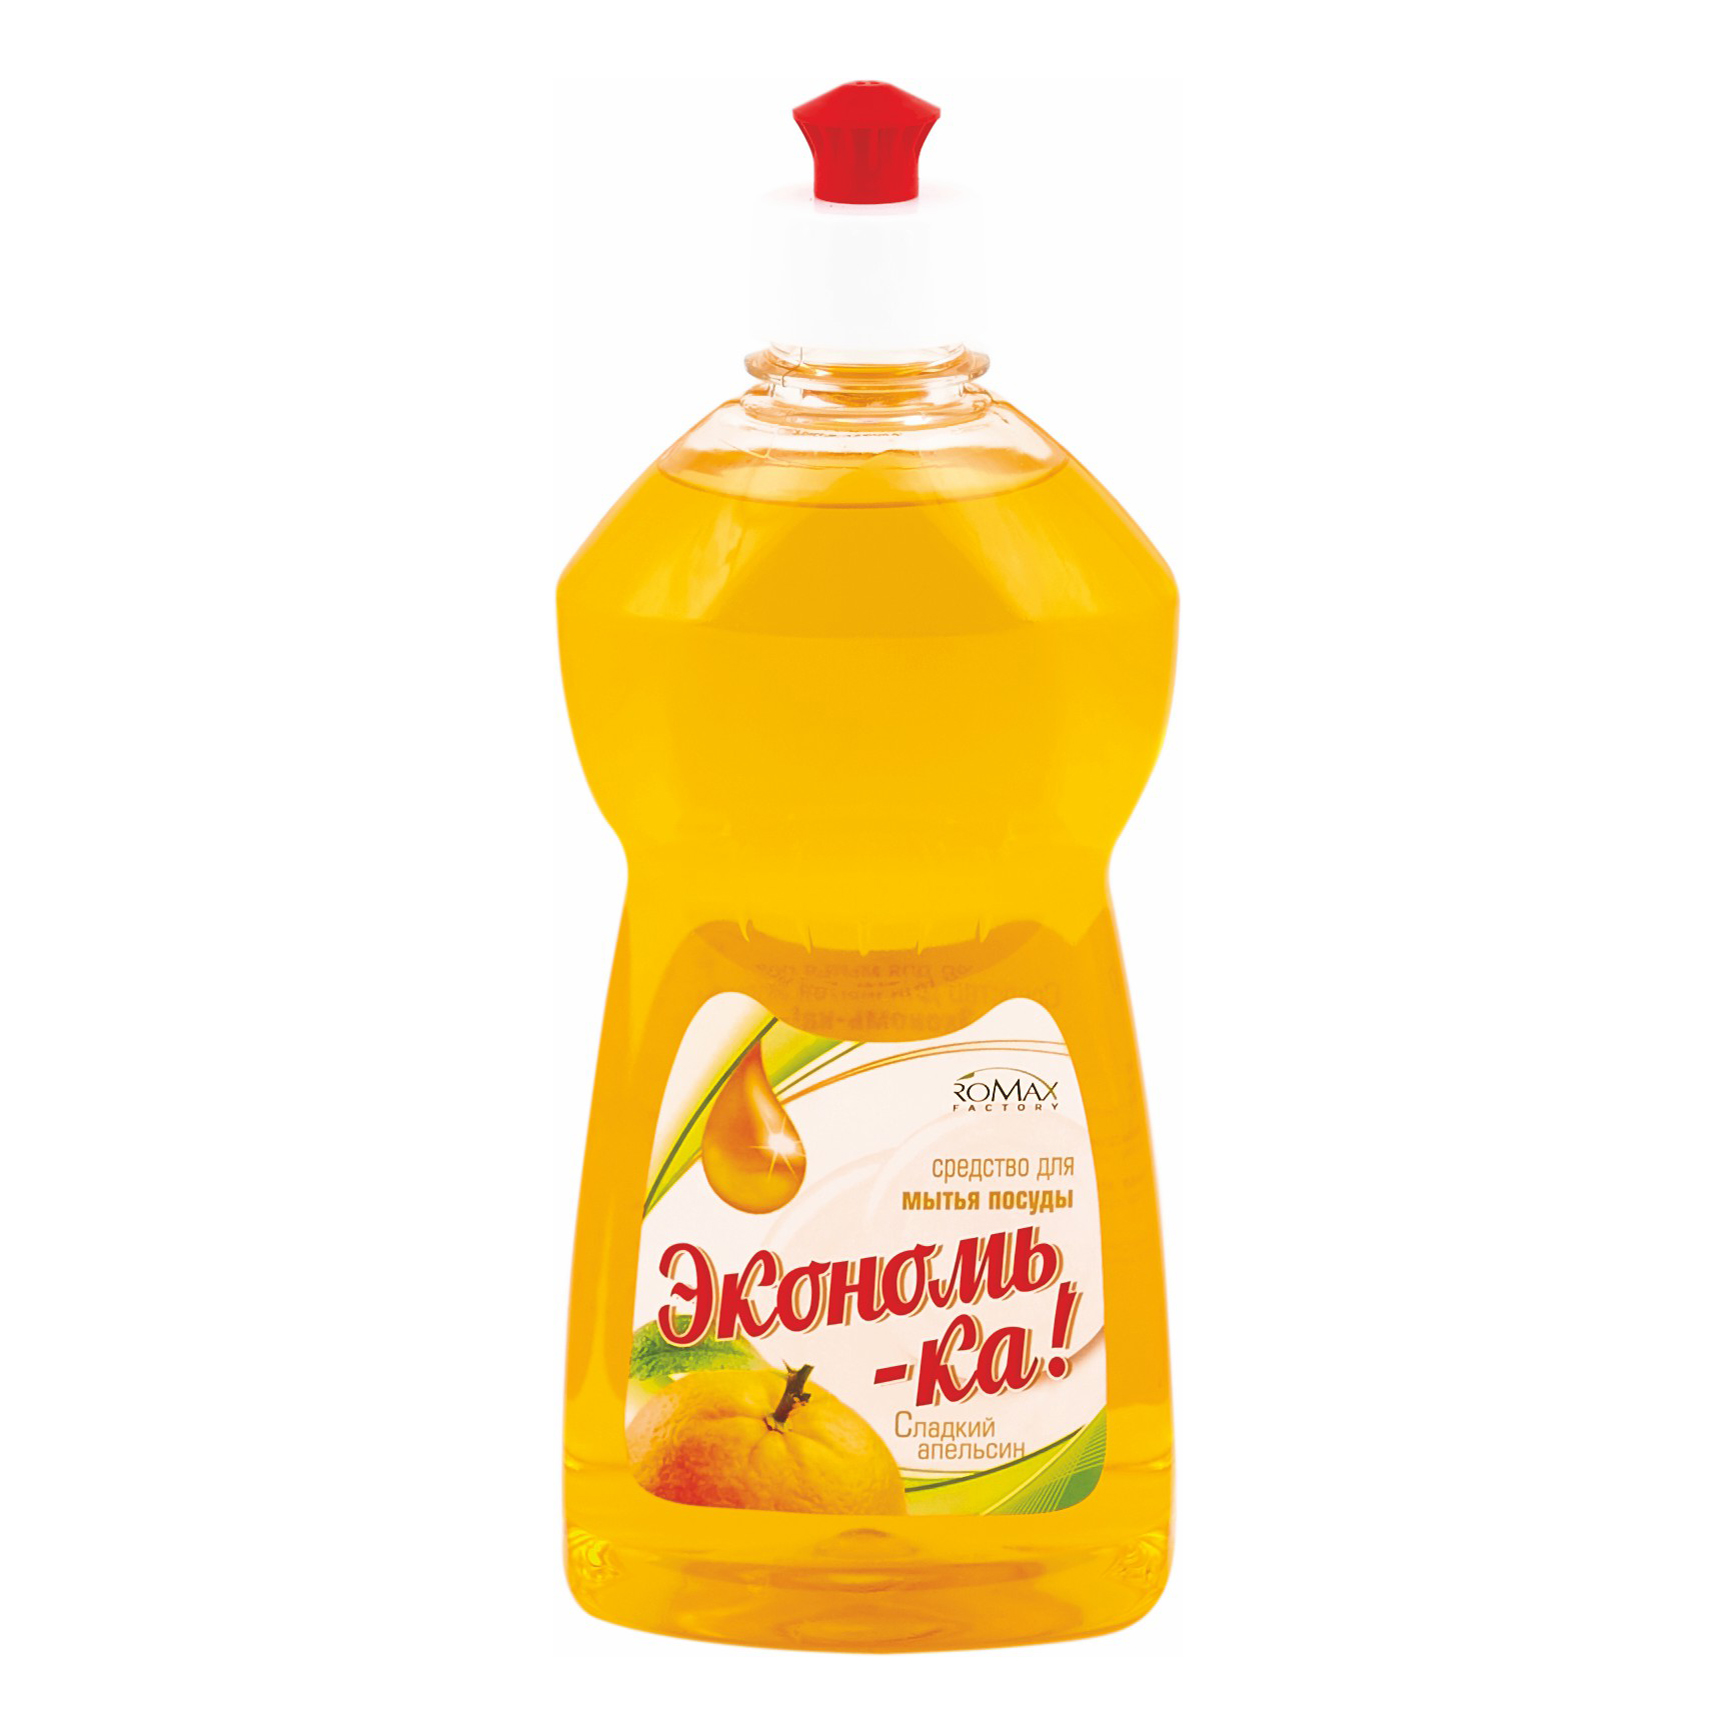 Жидкость Romax Экономь-Ка для мытья посуды Сладкий апельсин 500 г